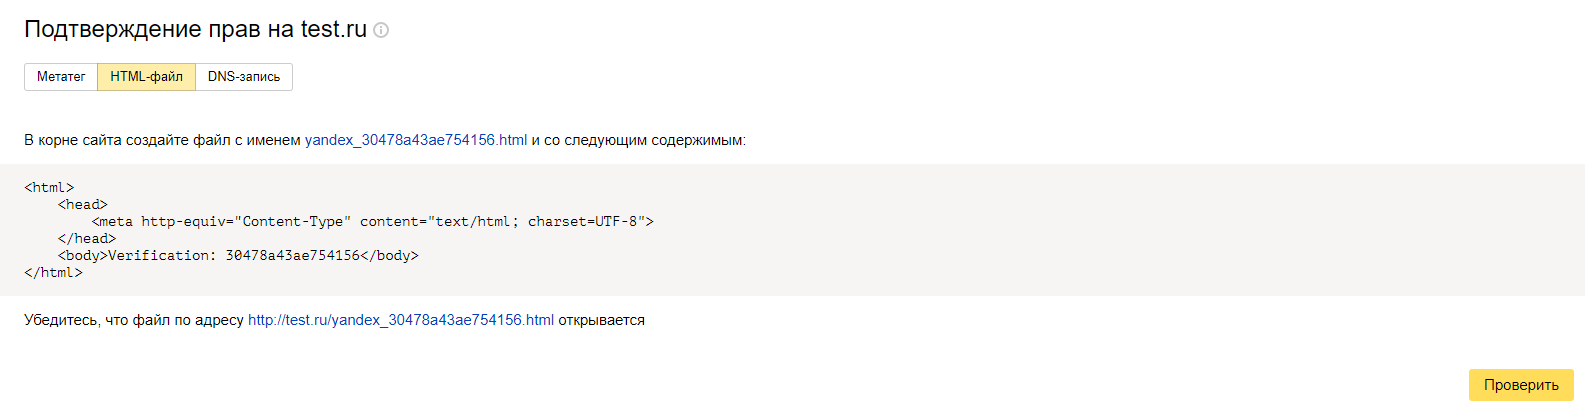 Как быстро проиндексировать сайт с помощью Яндекс.Вебмастер